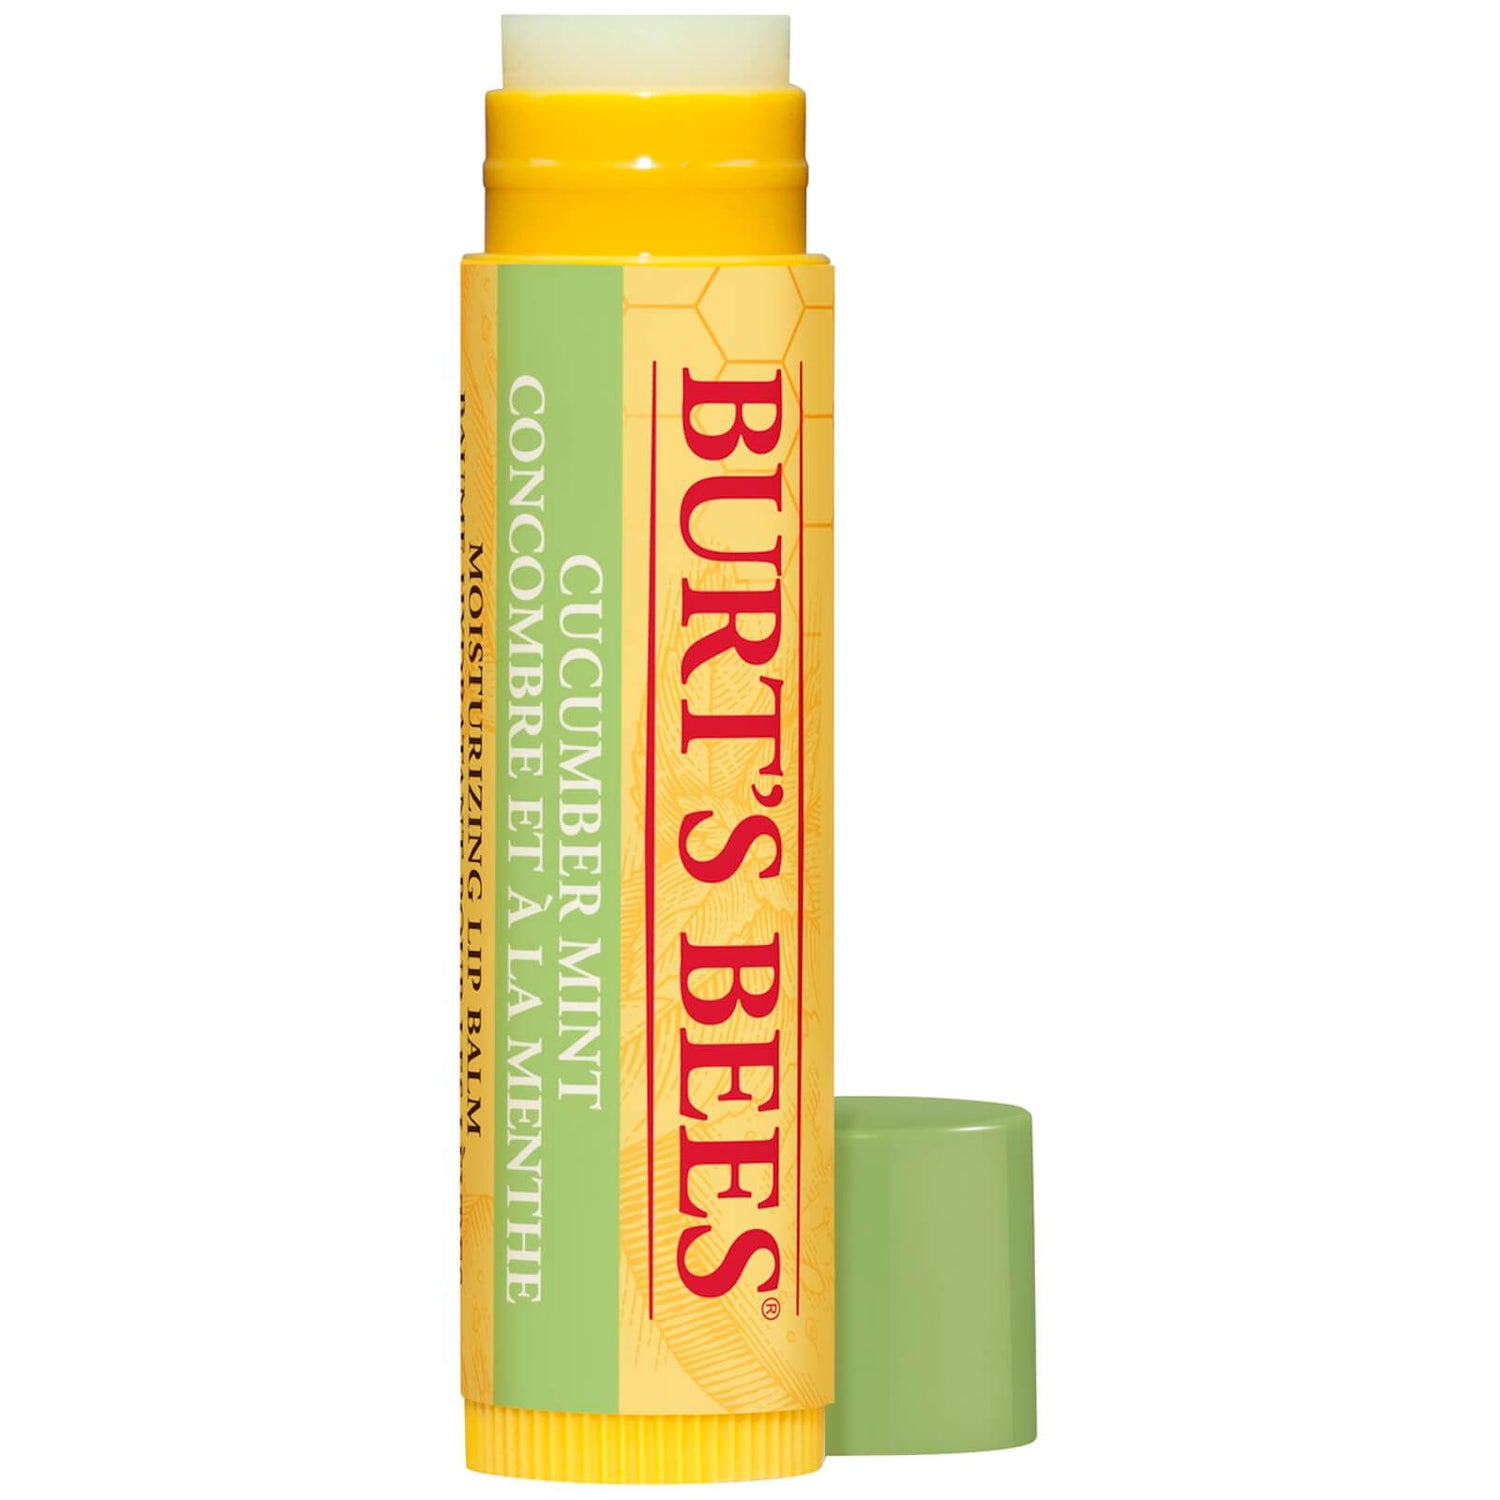 Burt's Bees 100% Natural Moisturising Lip Balm Cucumber Mint with Beeswax 4.25g